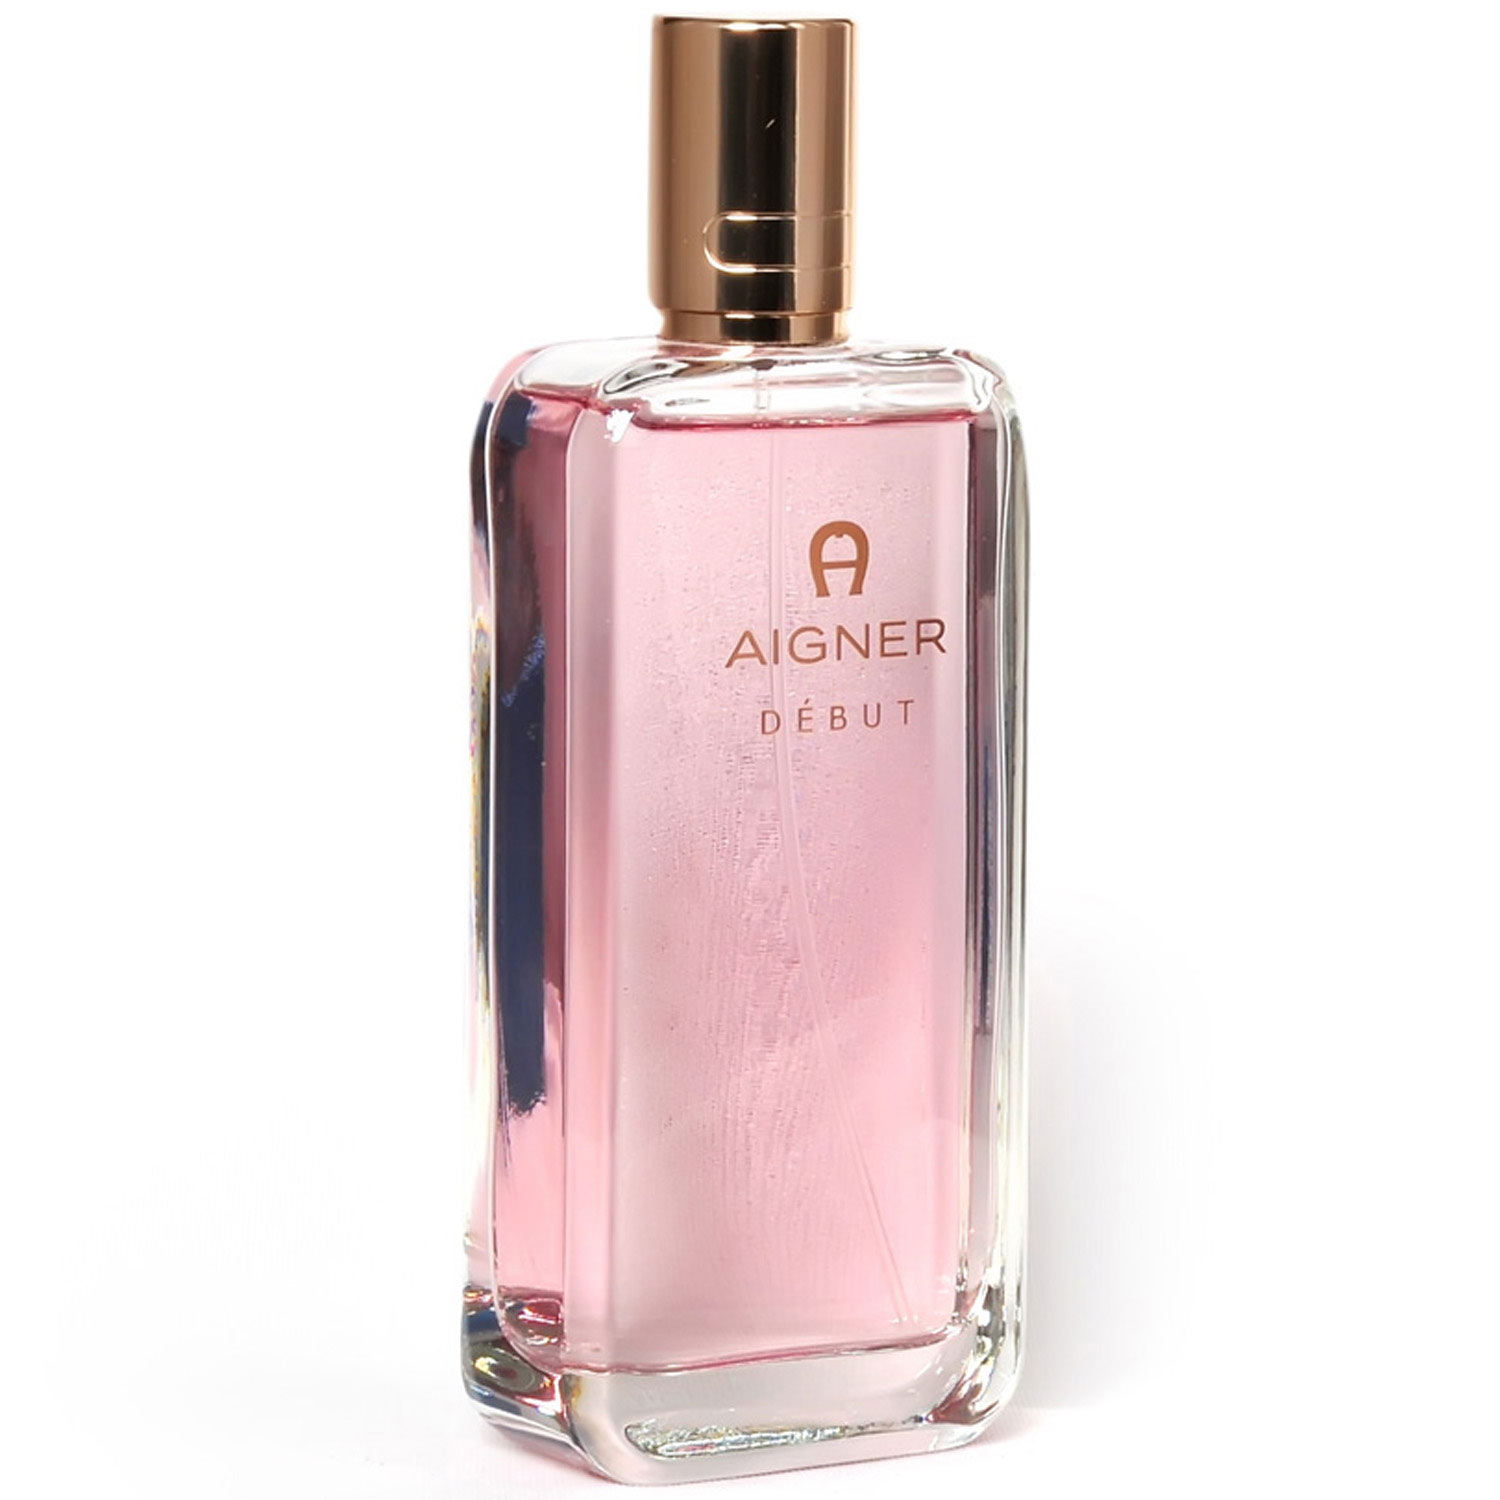 Buy/Send Aigner Debut Eau Parfum Online- N Petals